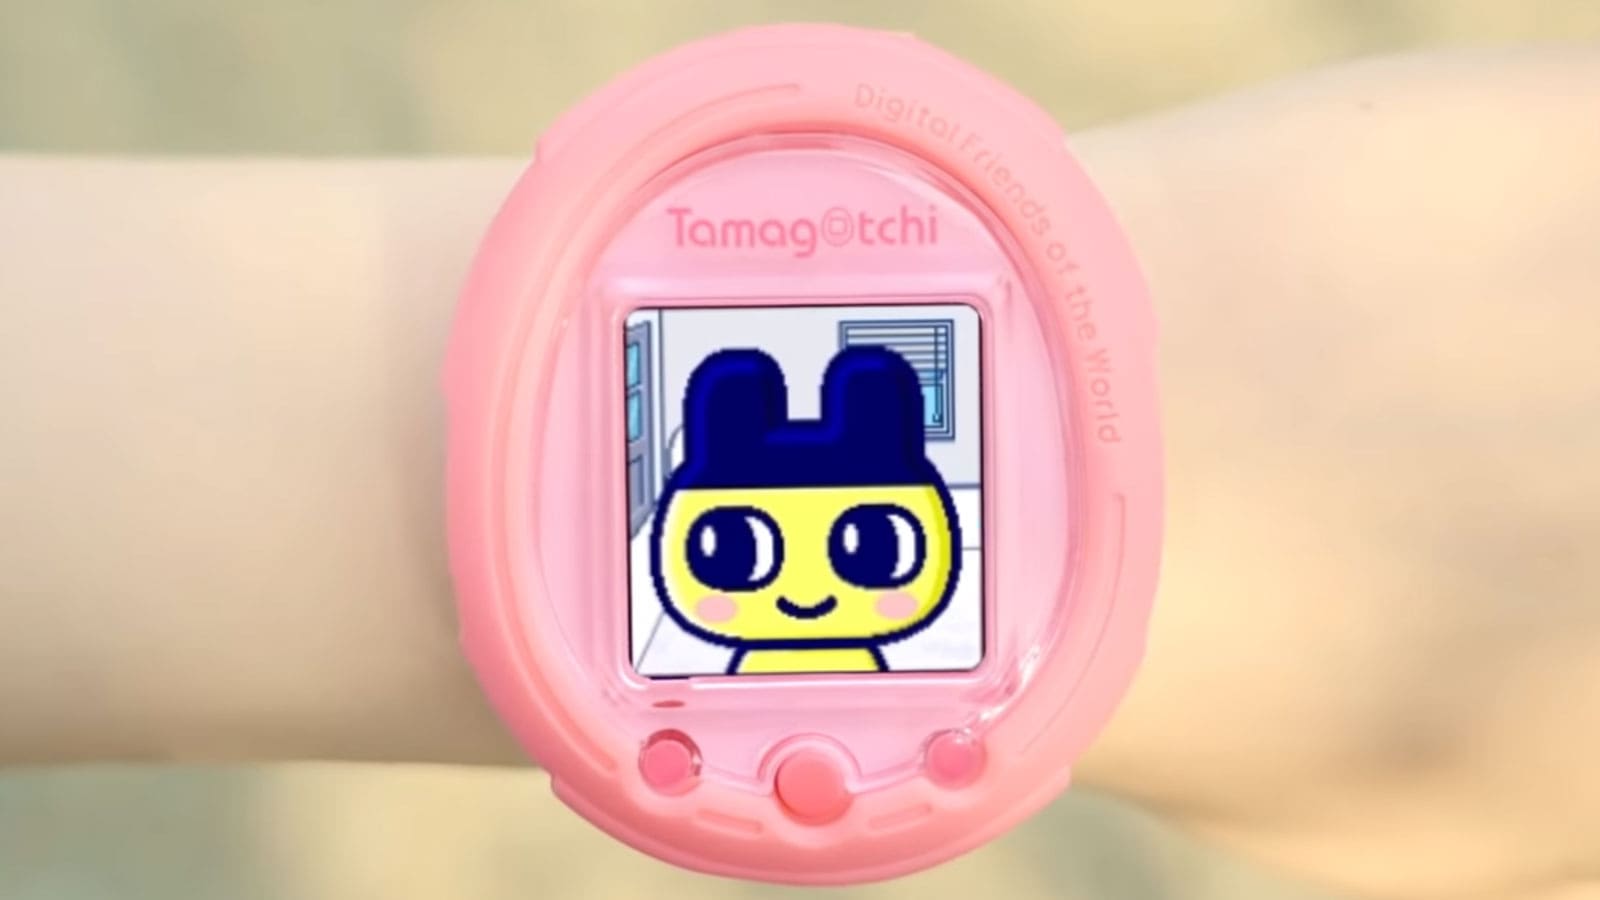 Le Tamagotchi de retour pour ses 25 ans : voici la montre